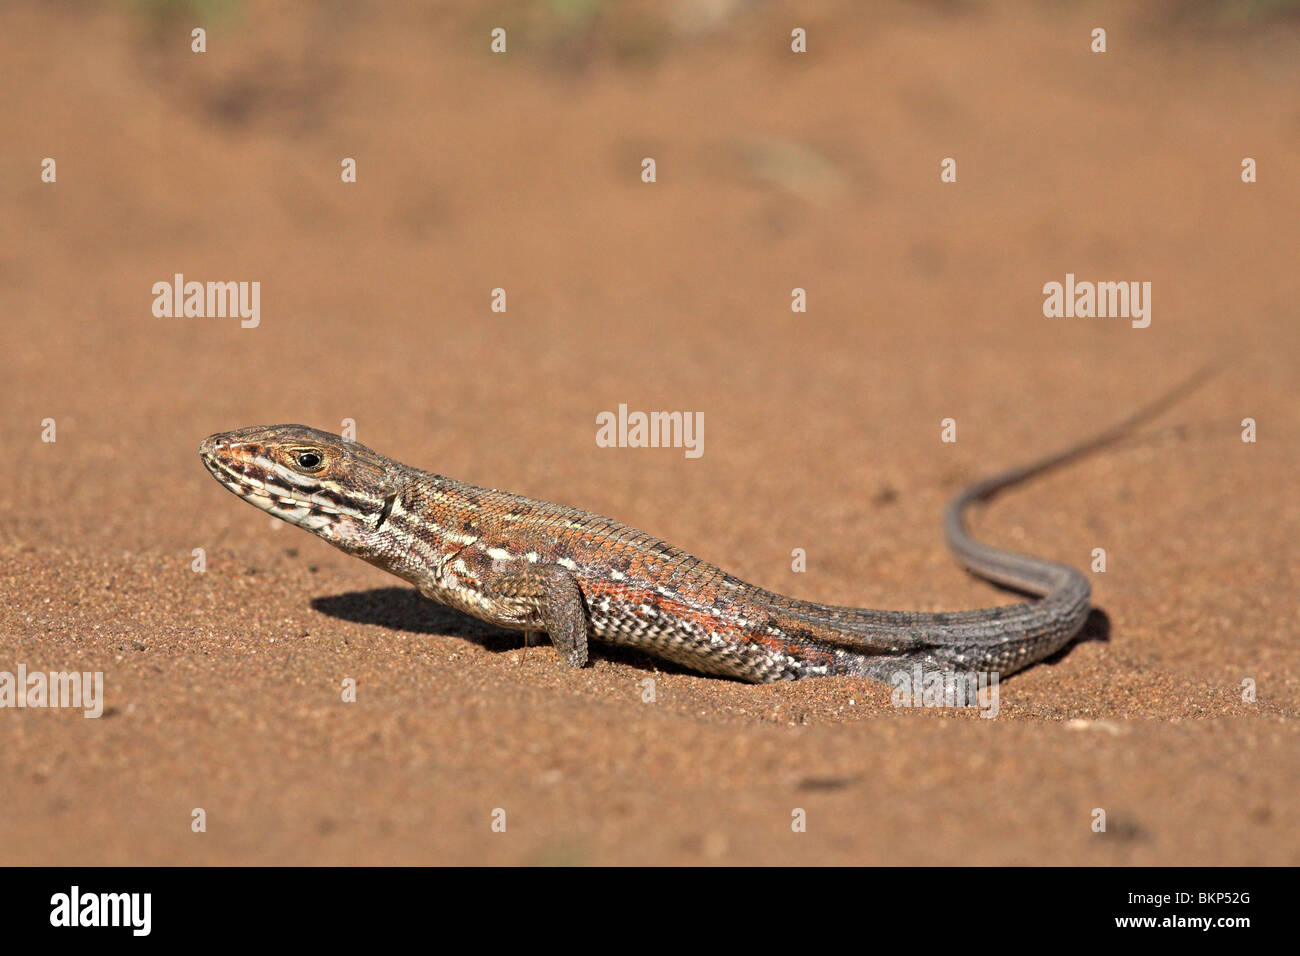 Foto del estremamente veloce ruvida comune scala lizard sulla sabbia Foto Stock